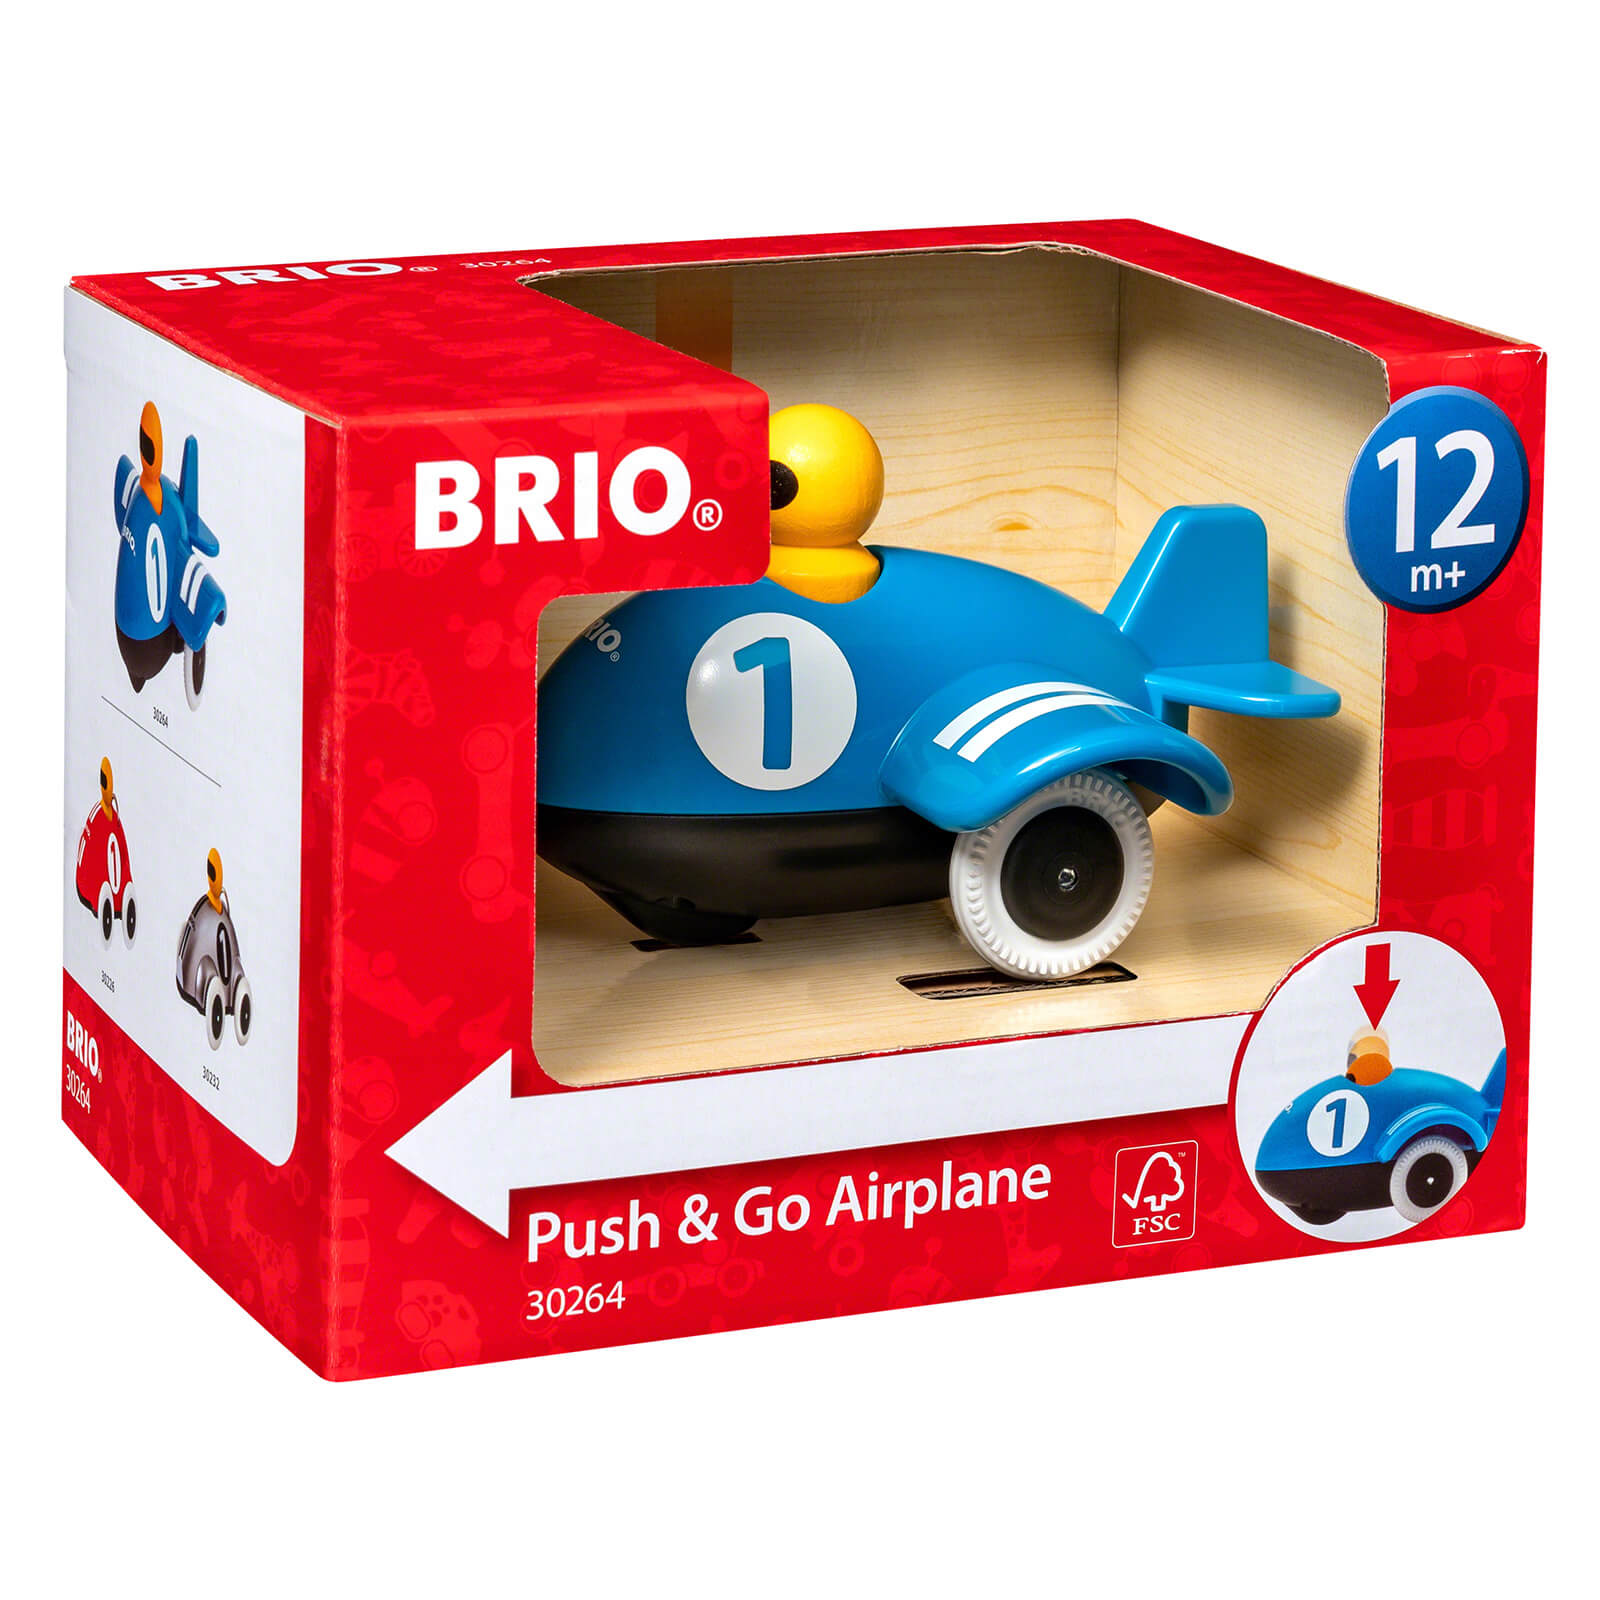 Brio Push & Go Airplane